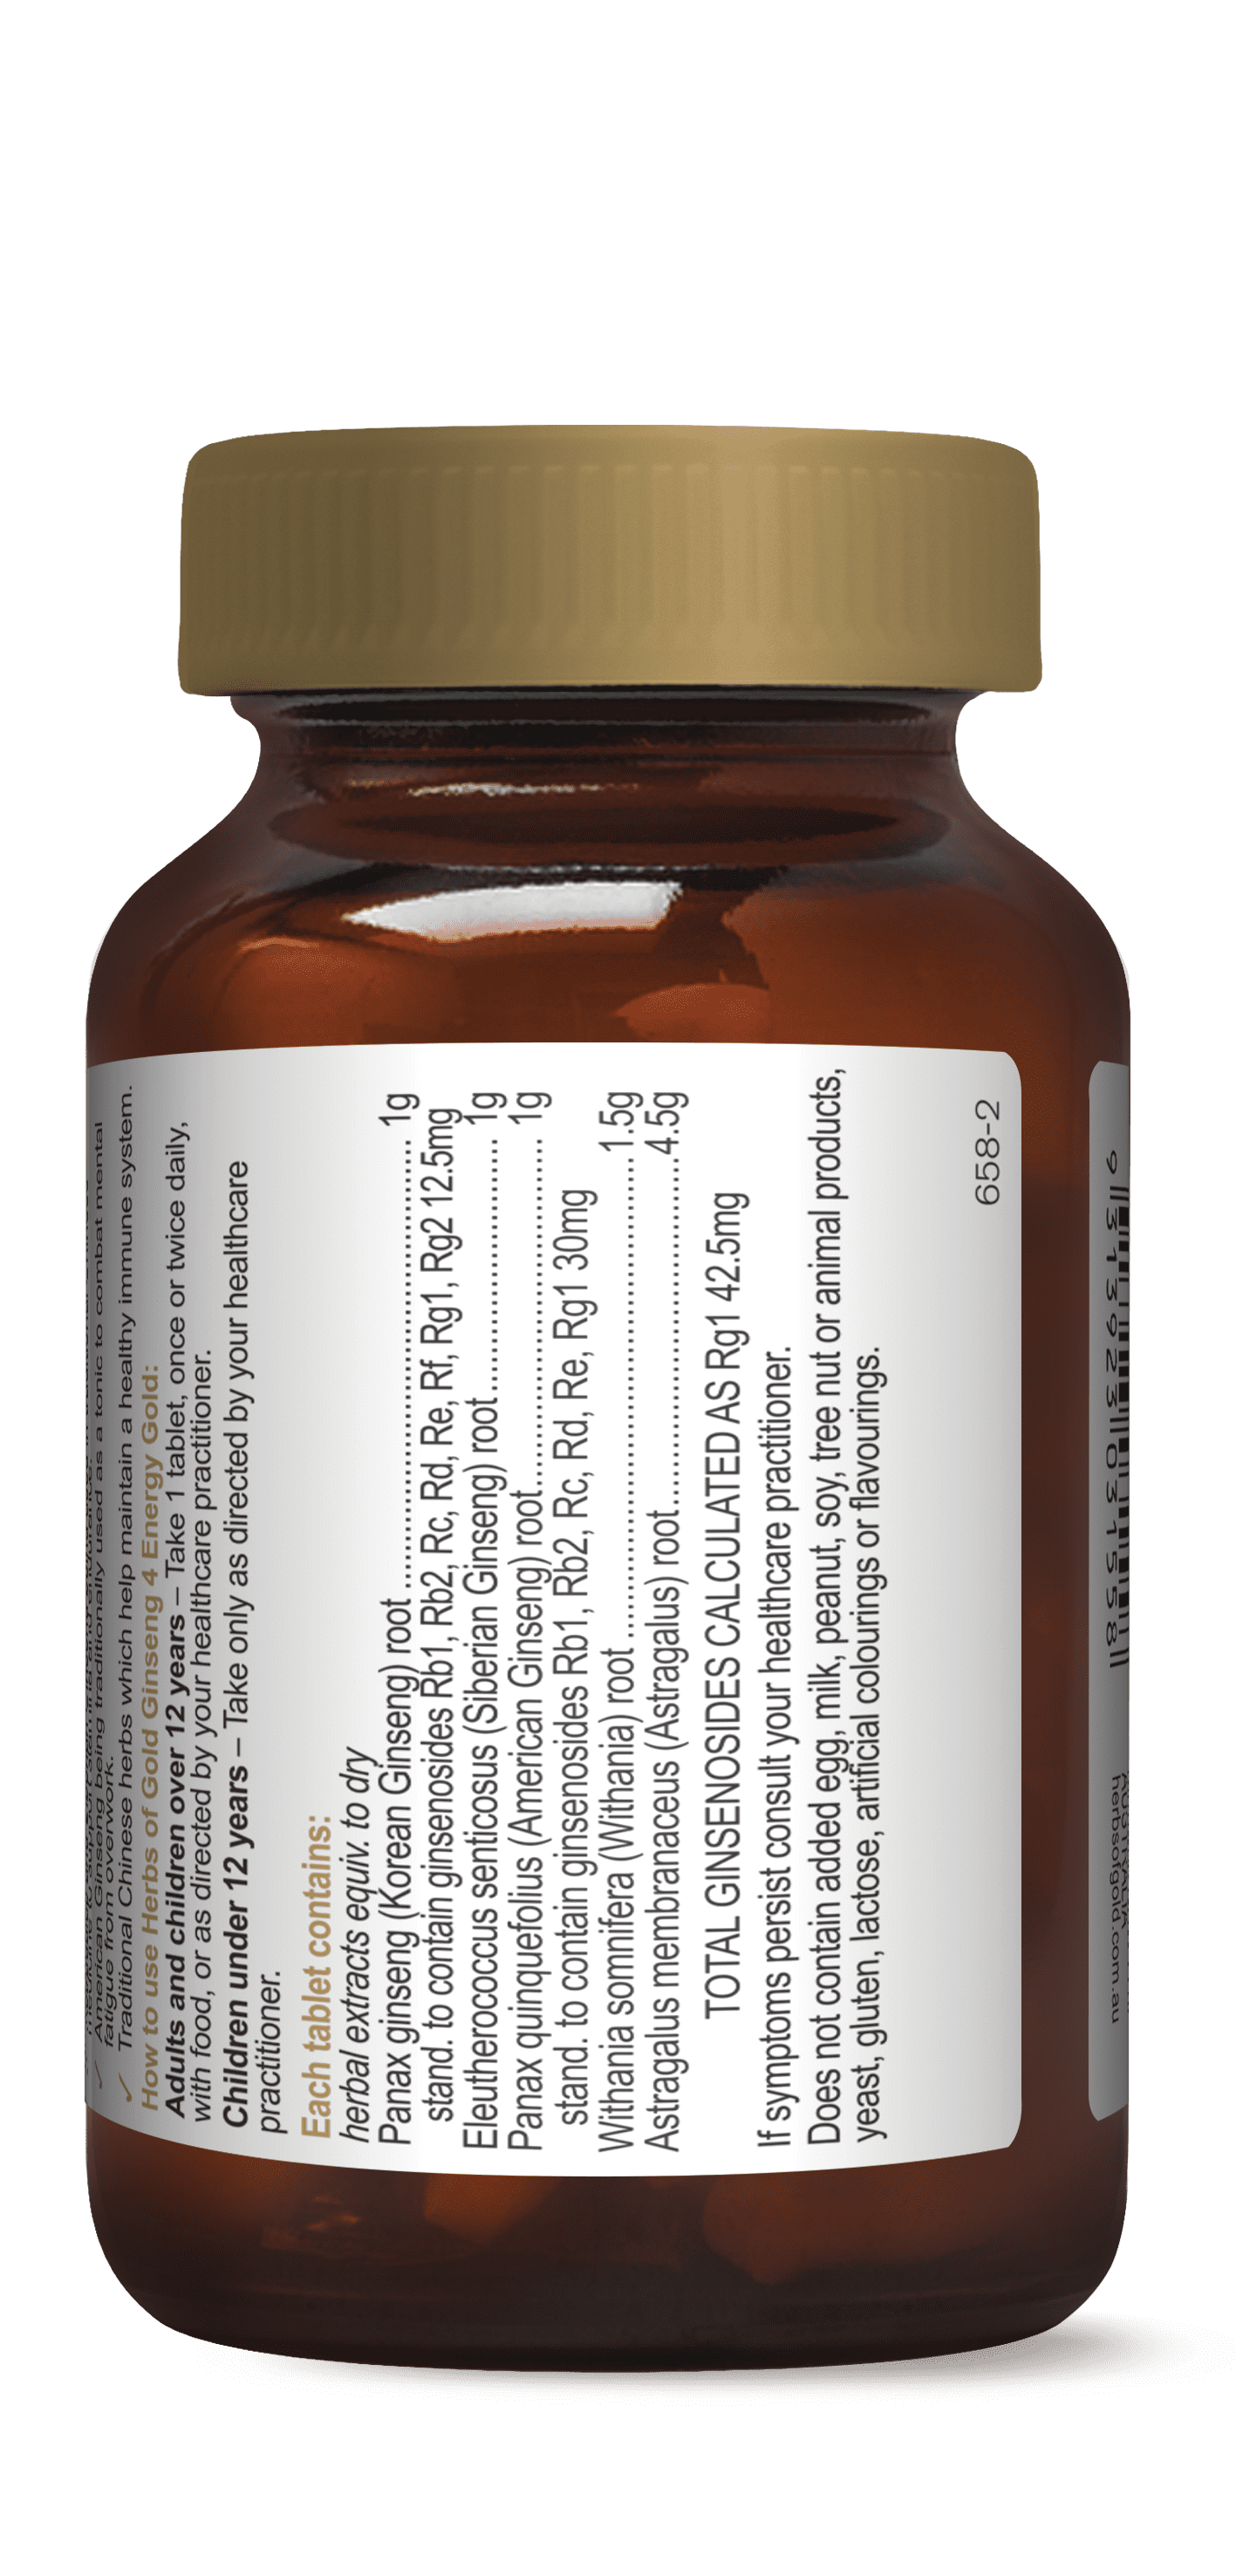 Cost ciprofloxacin 500mg